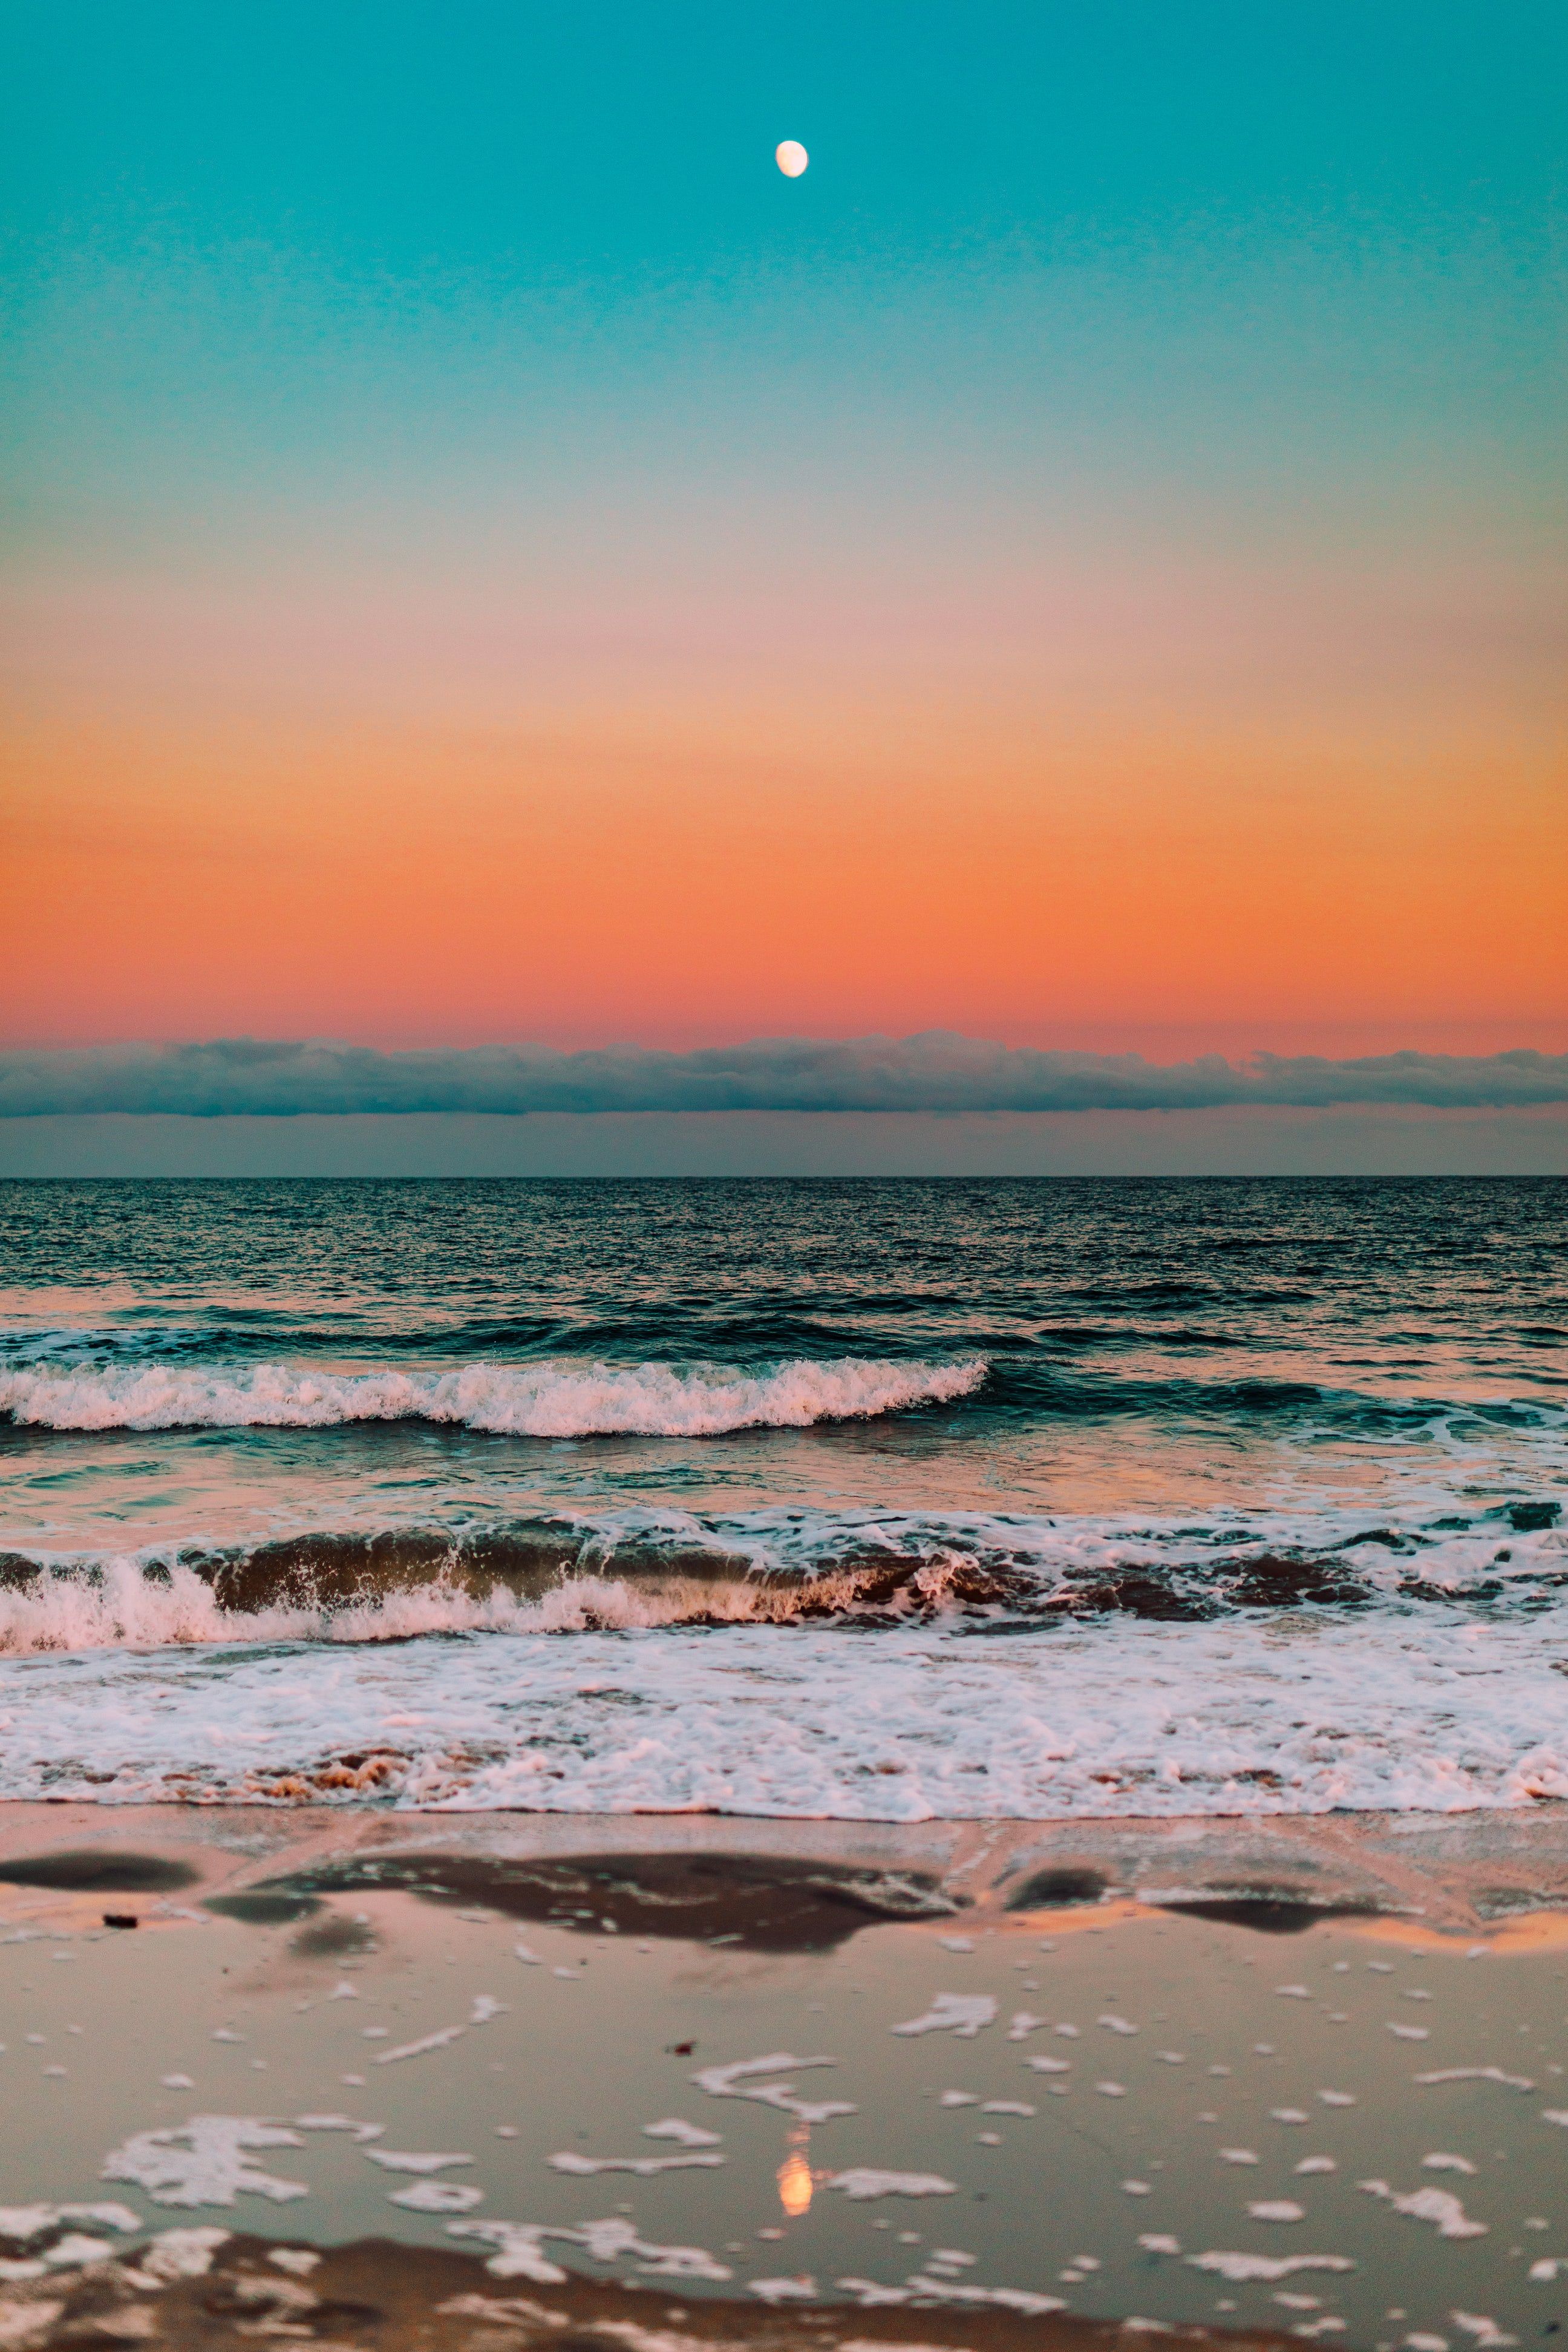 Hình nền sóng biển tươi mát là lựa chọn tuyệt vời để bạn thư giãn và tìm lại cân bằng trong cuộc sống. Với màu xanh mát của biển và những đường sóng nhẹ nhàng, bạn sẽ cảm thấy như được đắm mình trong không gian biển cả, mang lại cảm giác thoải mái và bình yên tuyệt vời.